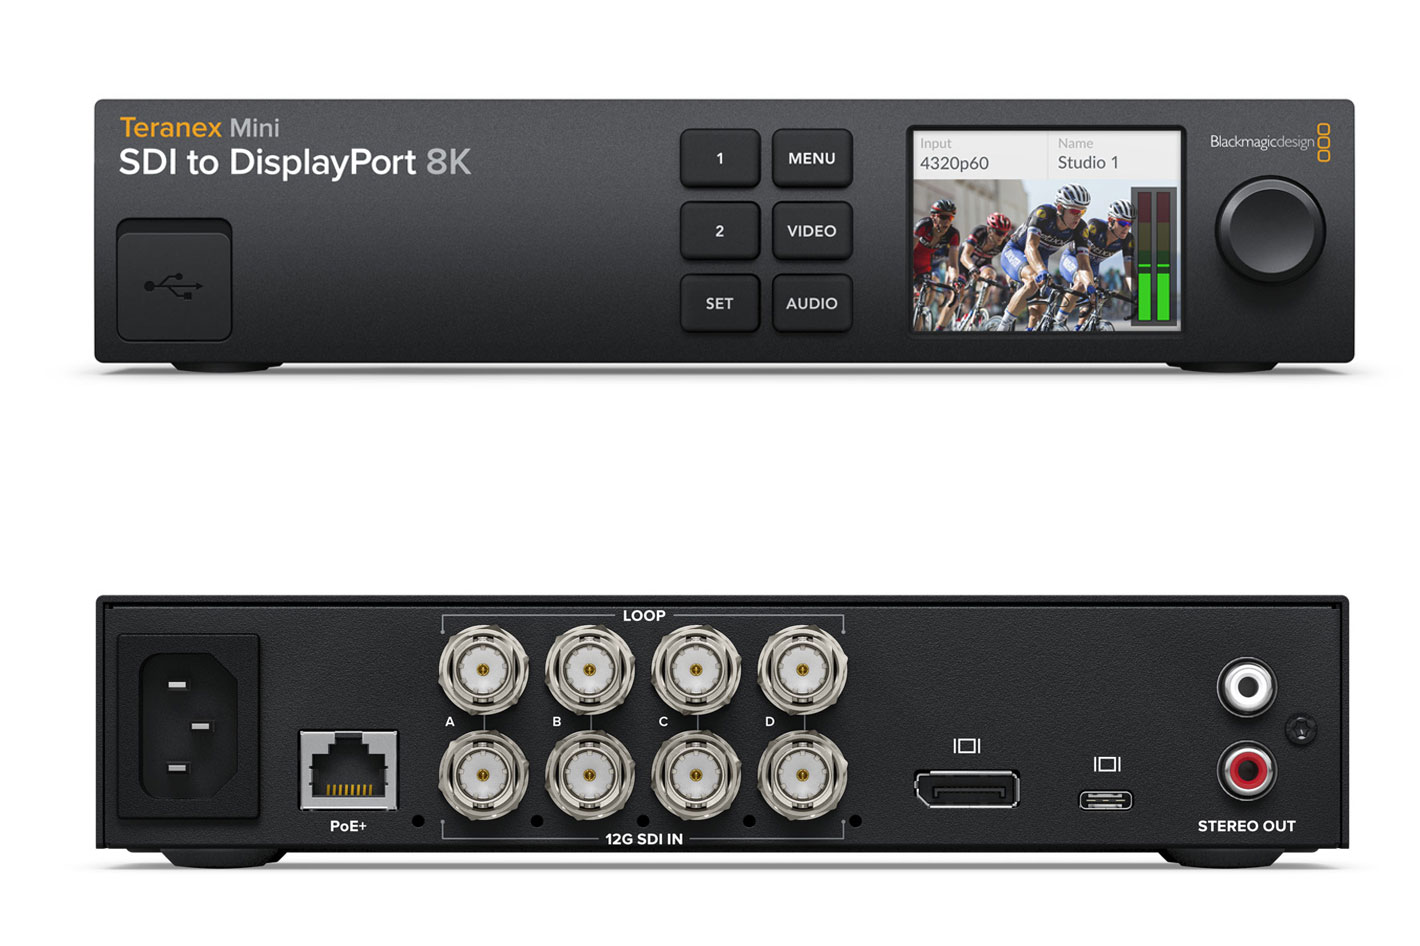 Teranex Mini SDI to DisplayPort 8K HDR now shipping